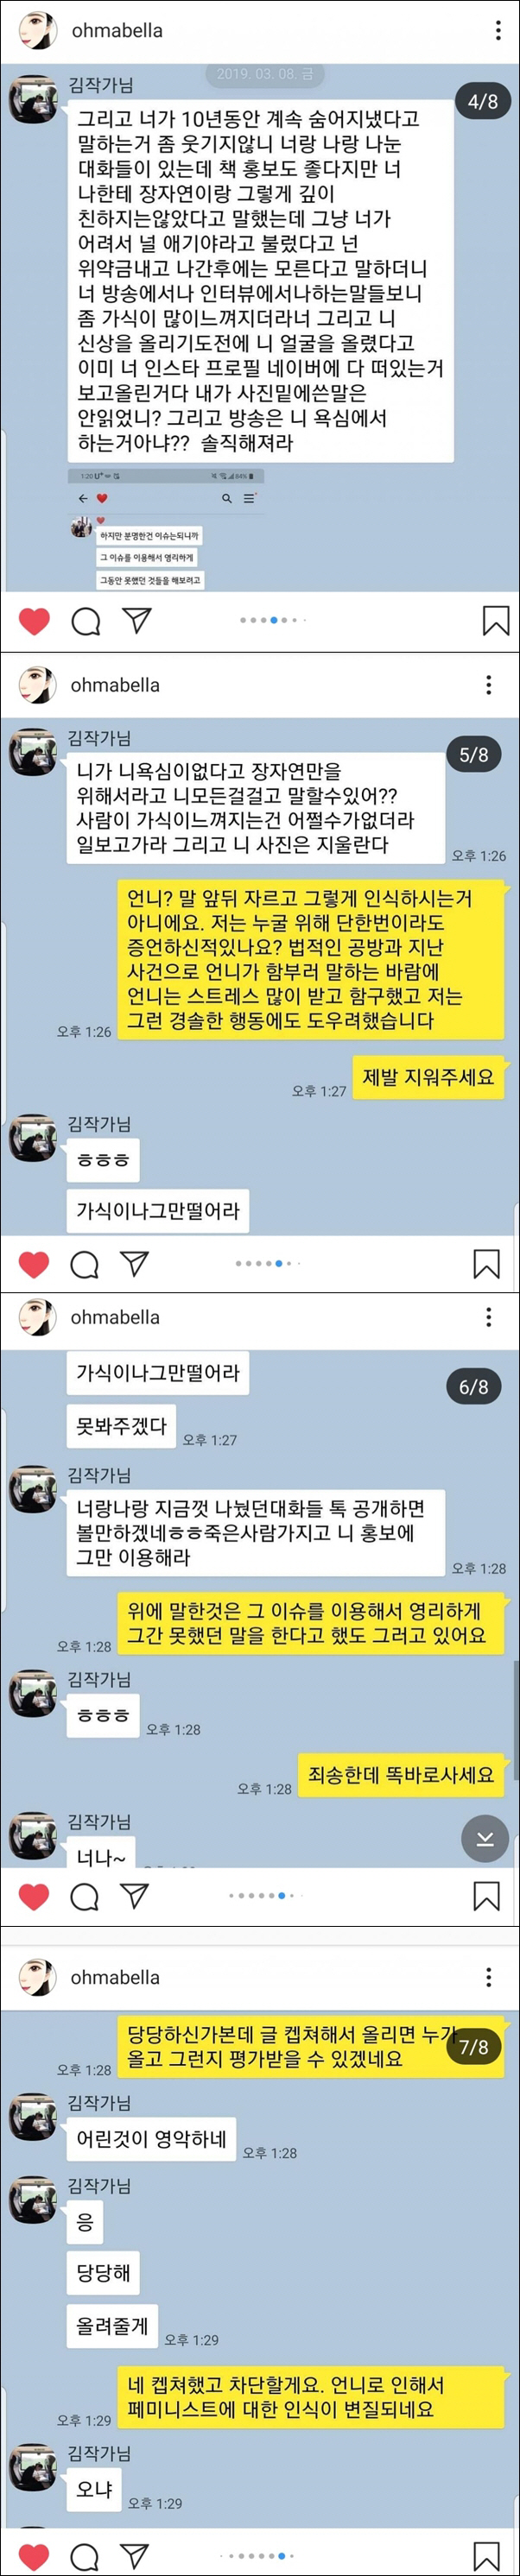 윤지오-김수민 카톡 대화